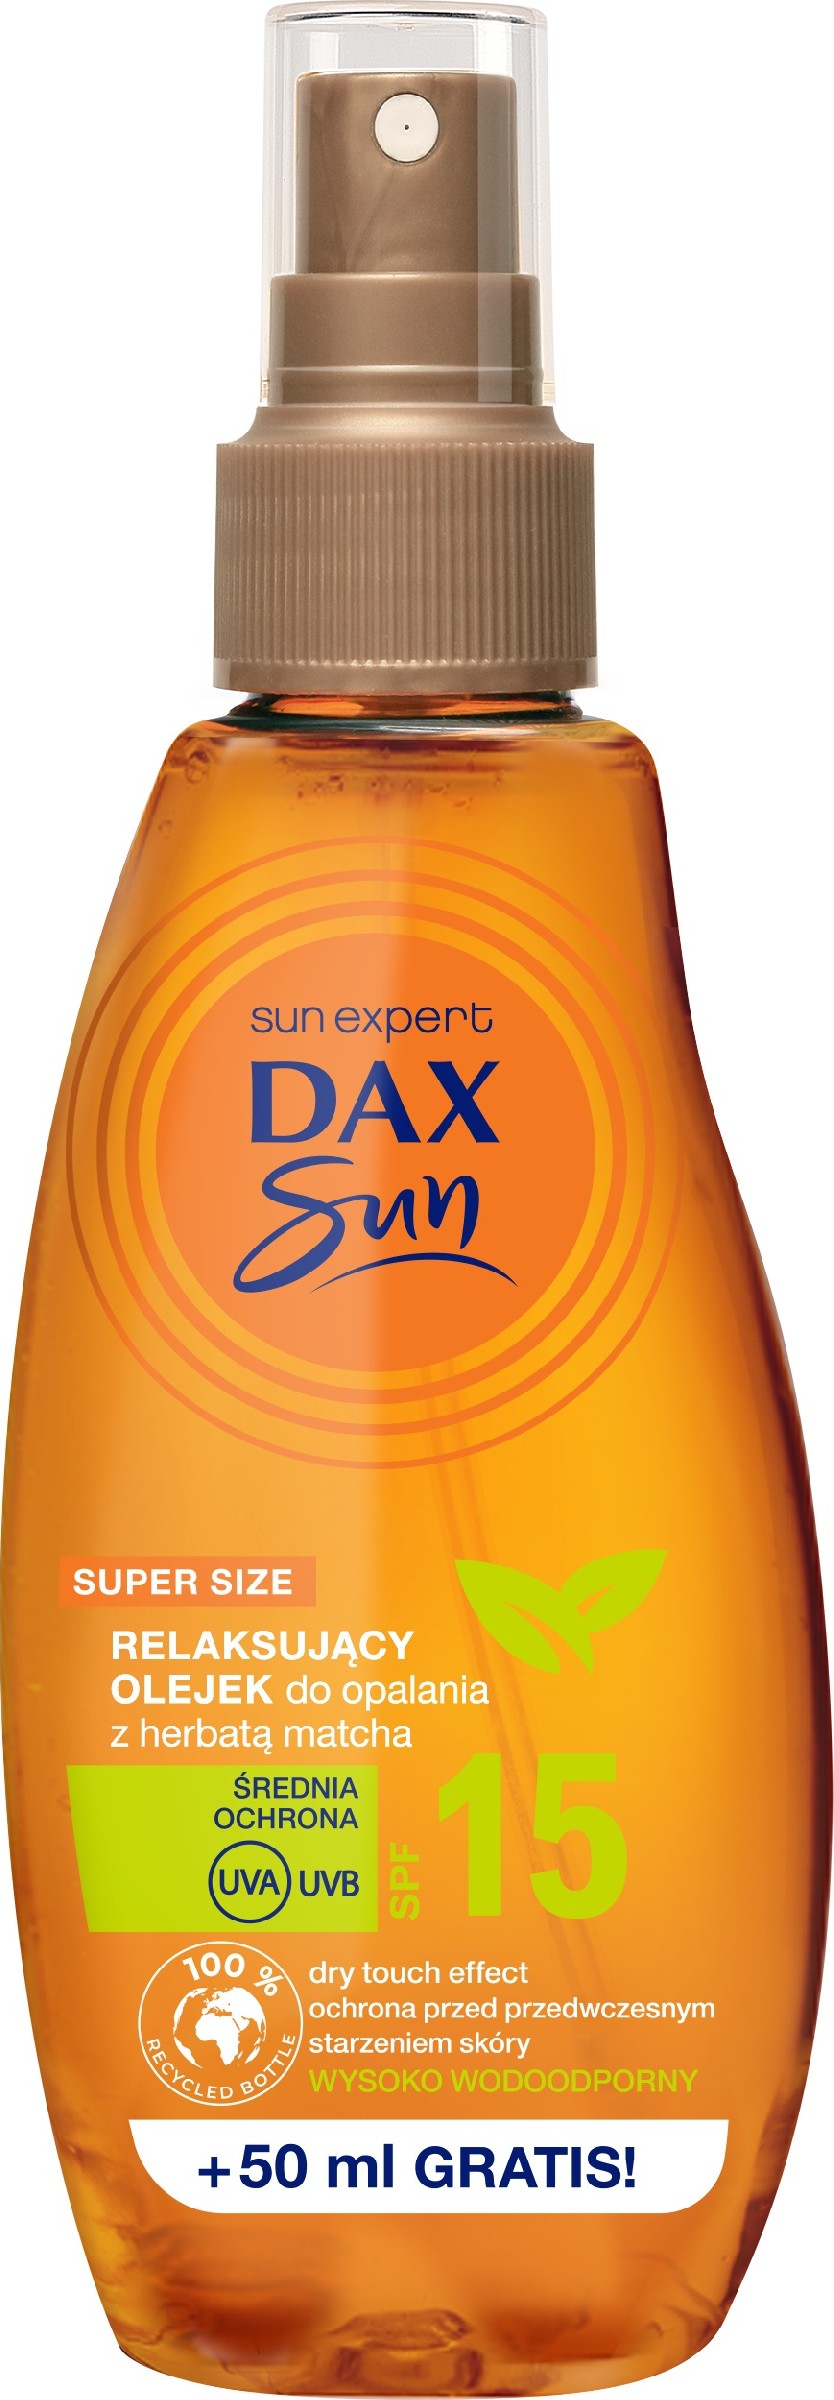 Dax Sun Relaksujący Olejek do opalania z herbatą Matcha SPF15  200ml